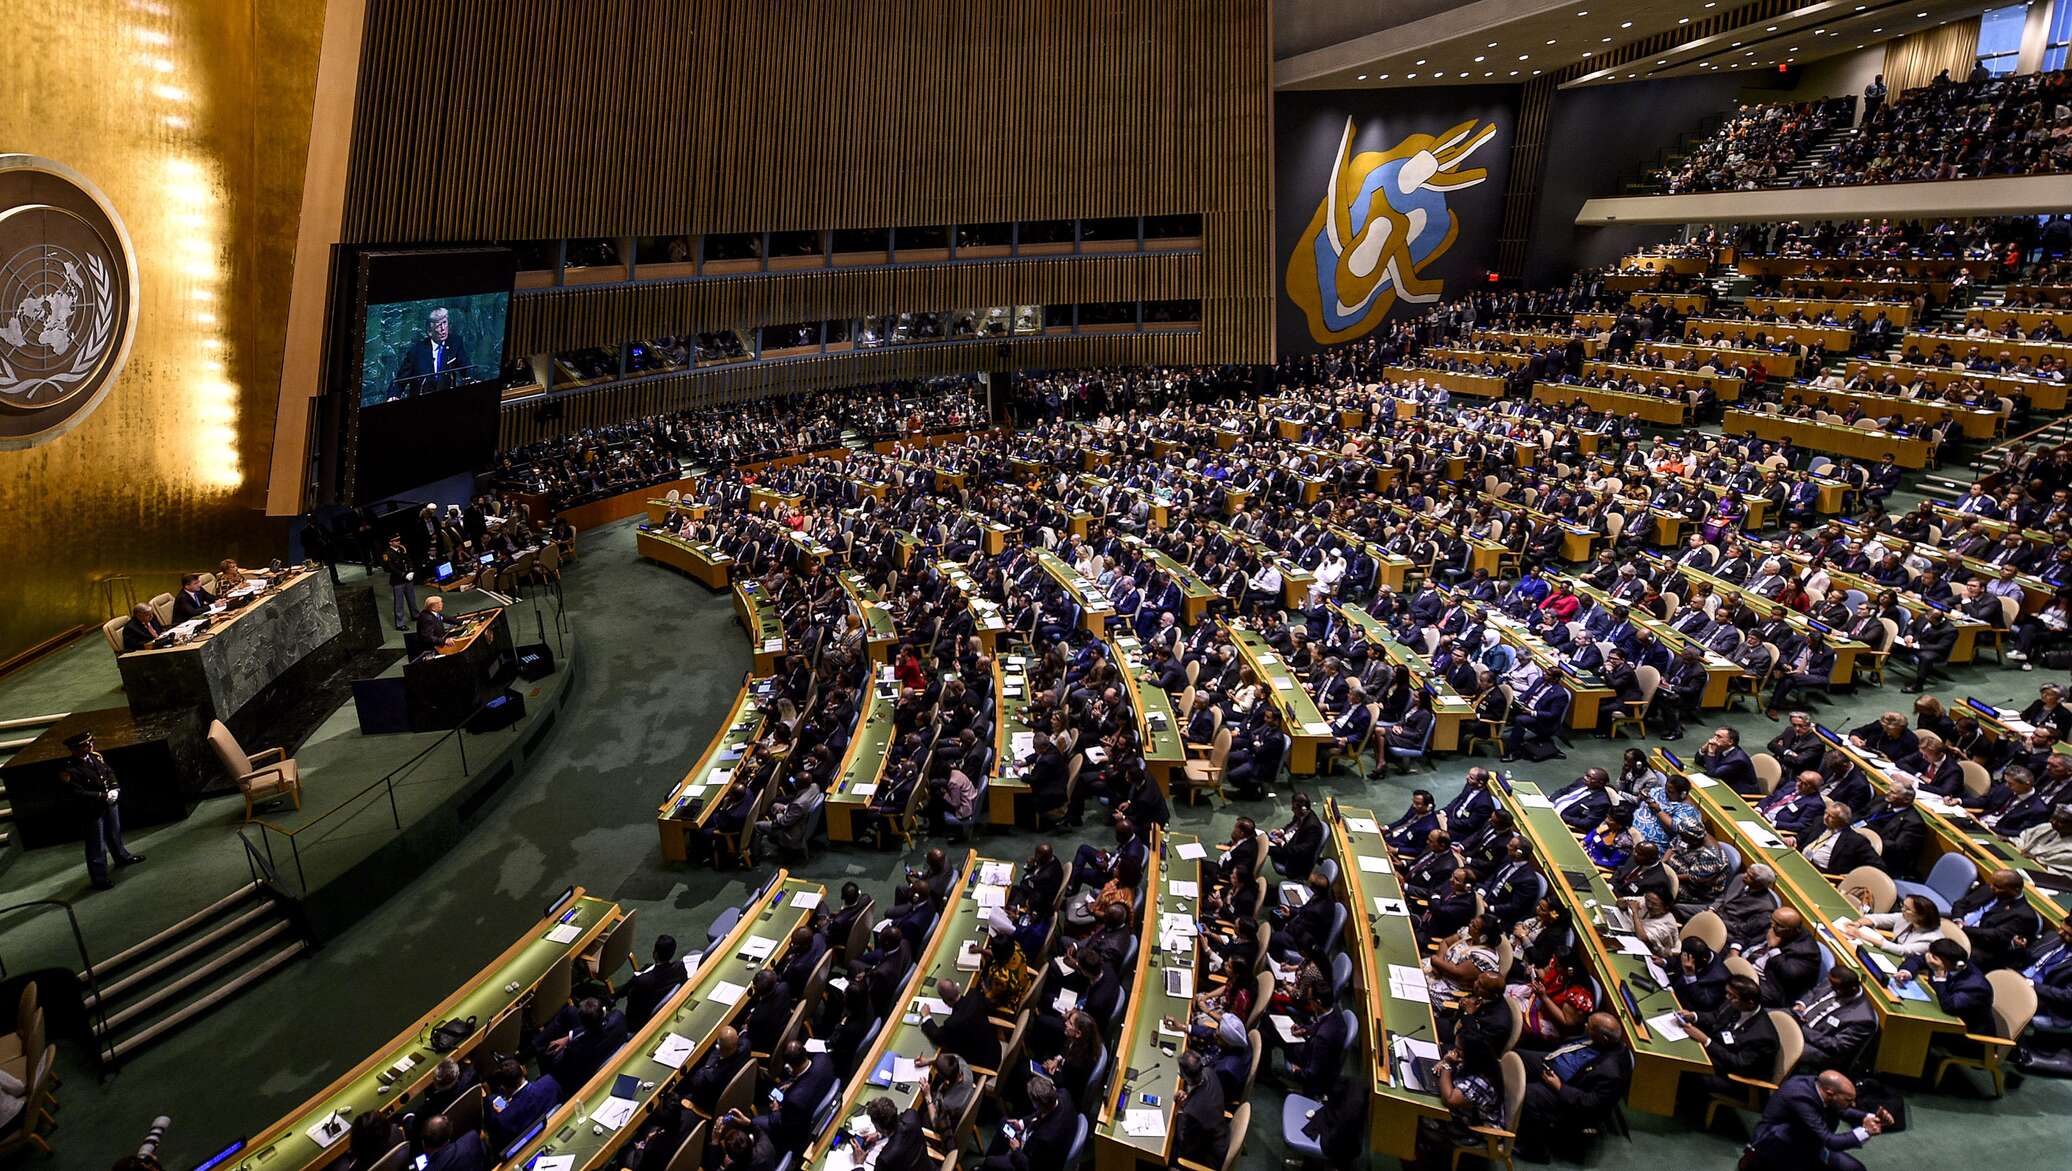 Оон сентябрь. Зал Генеральной Ассамблеи ООН. Зал заседаний Генассамблеи ООН. Генассамблея ООН В Нью Йорке. Зал заседания Генеральной Ассамблеи ООН.